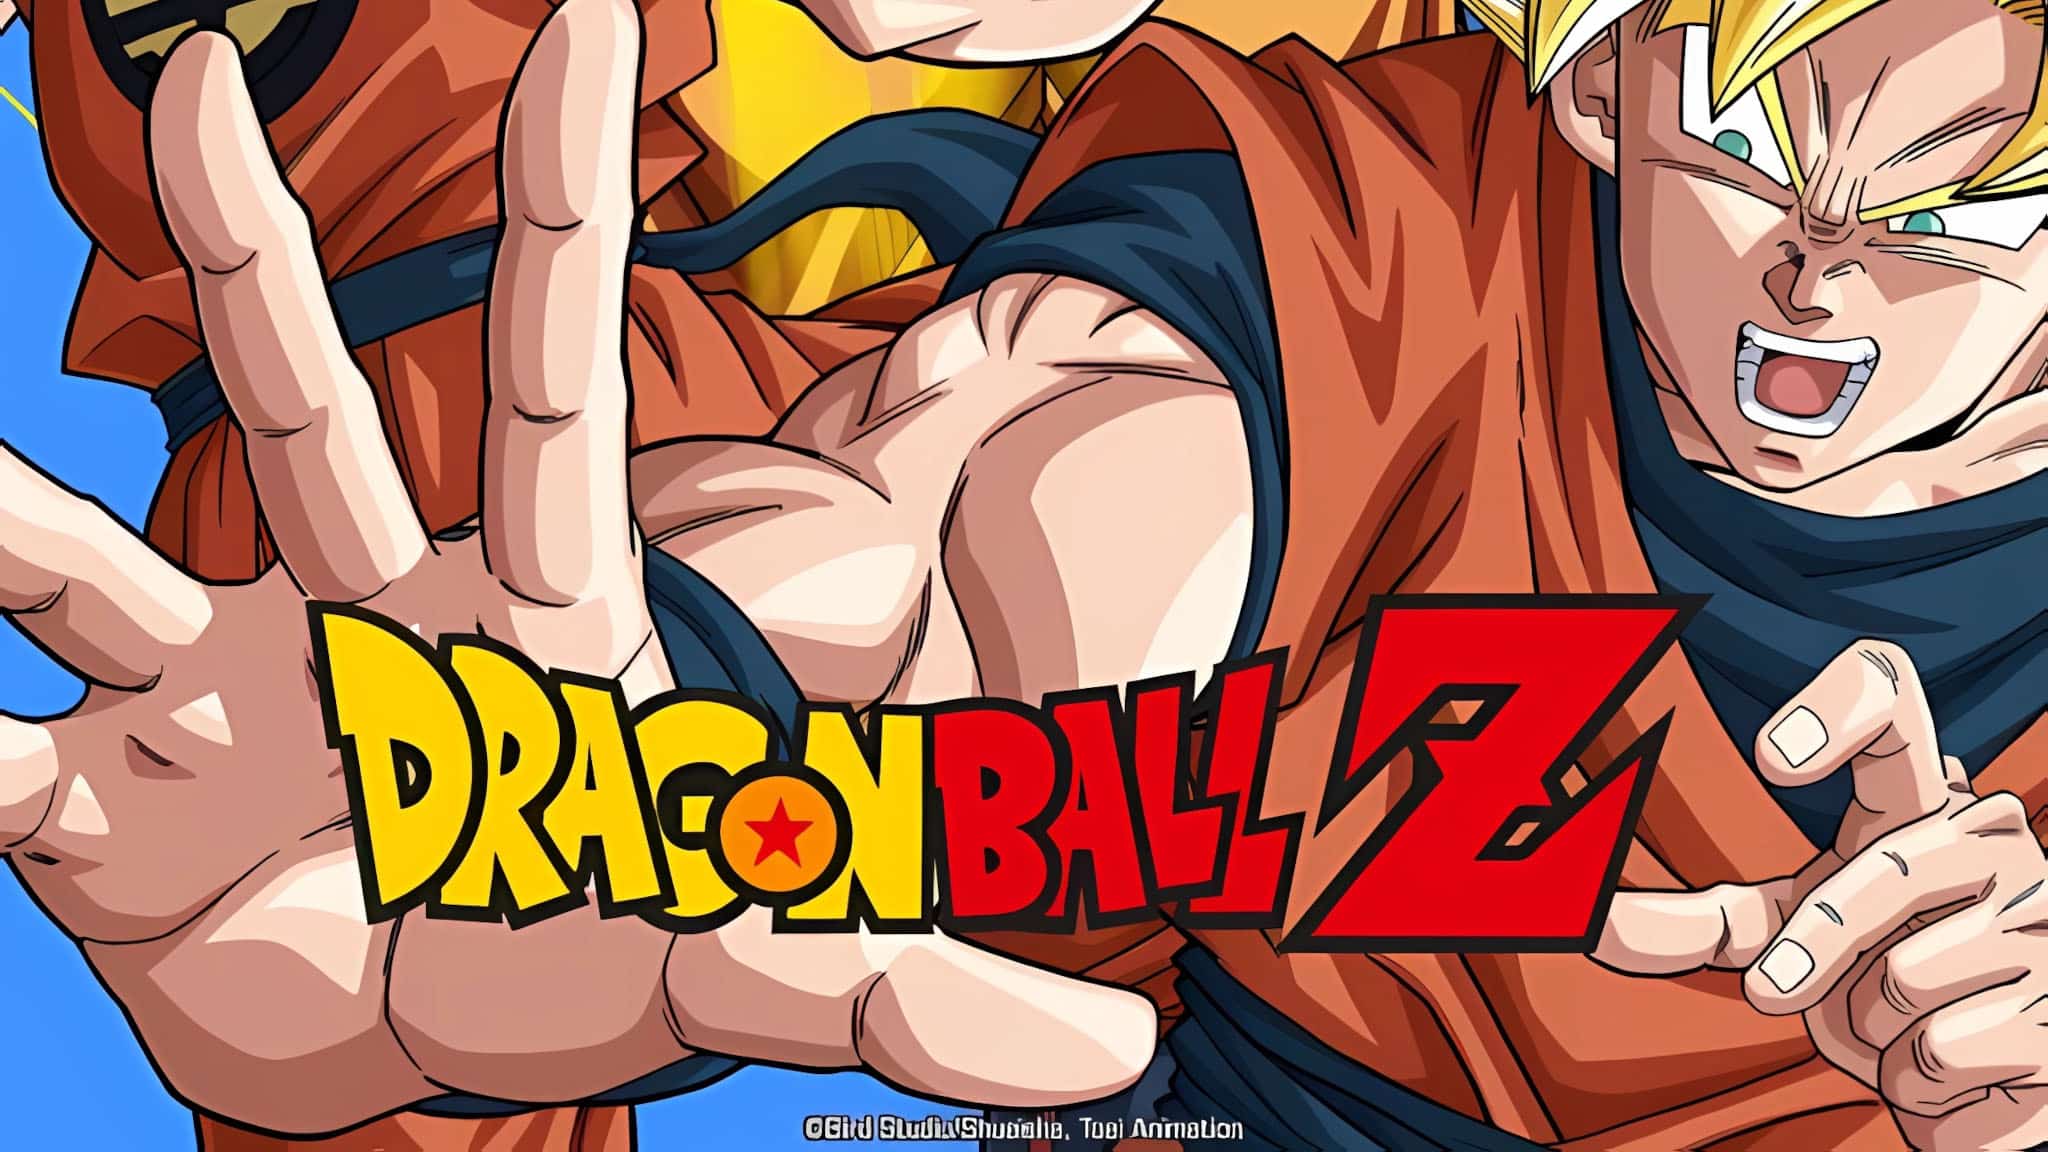 Annonce de la date de sortie de l'anime Dragon Ball Z sur Crunchyroll en VOSTFR et VF.